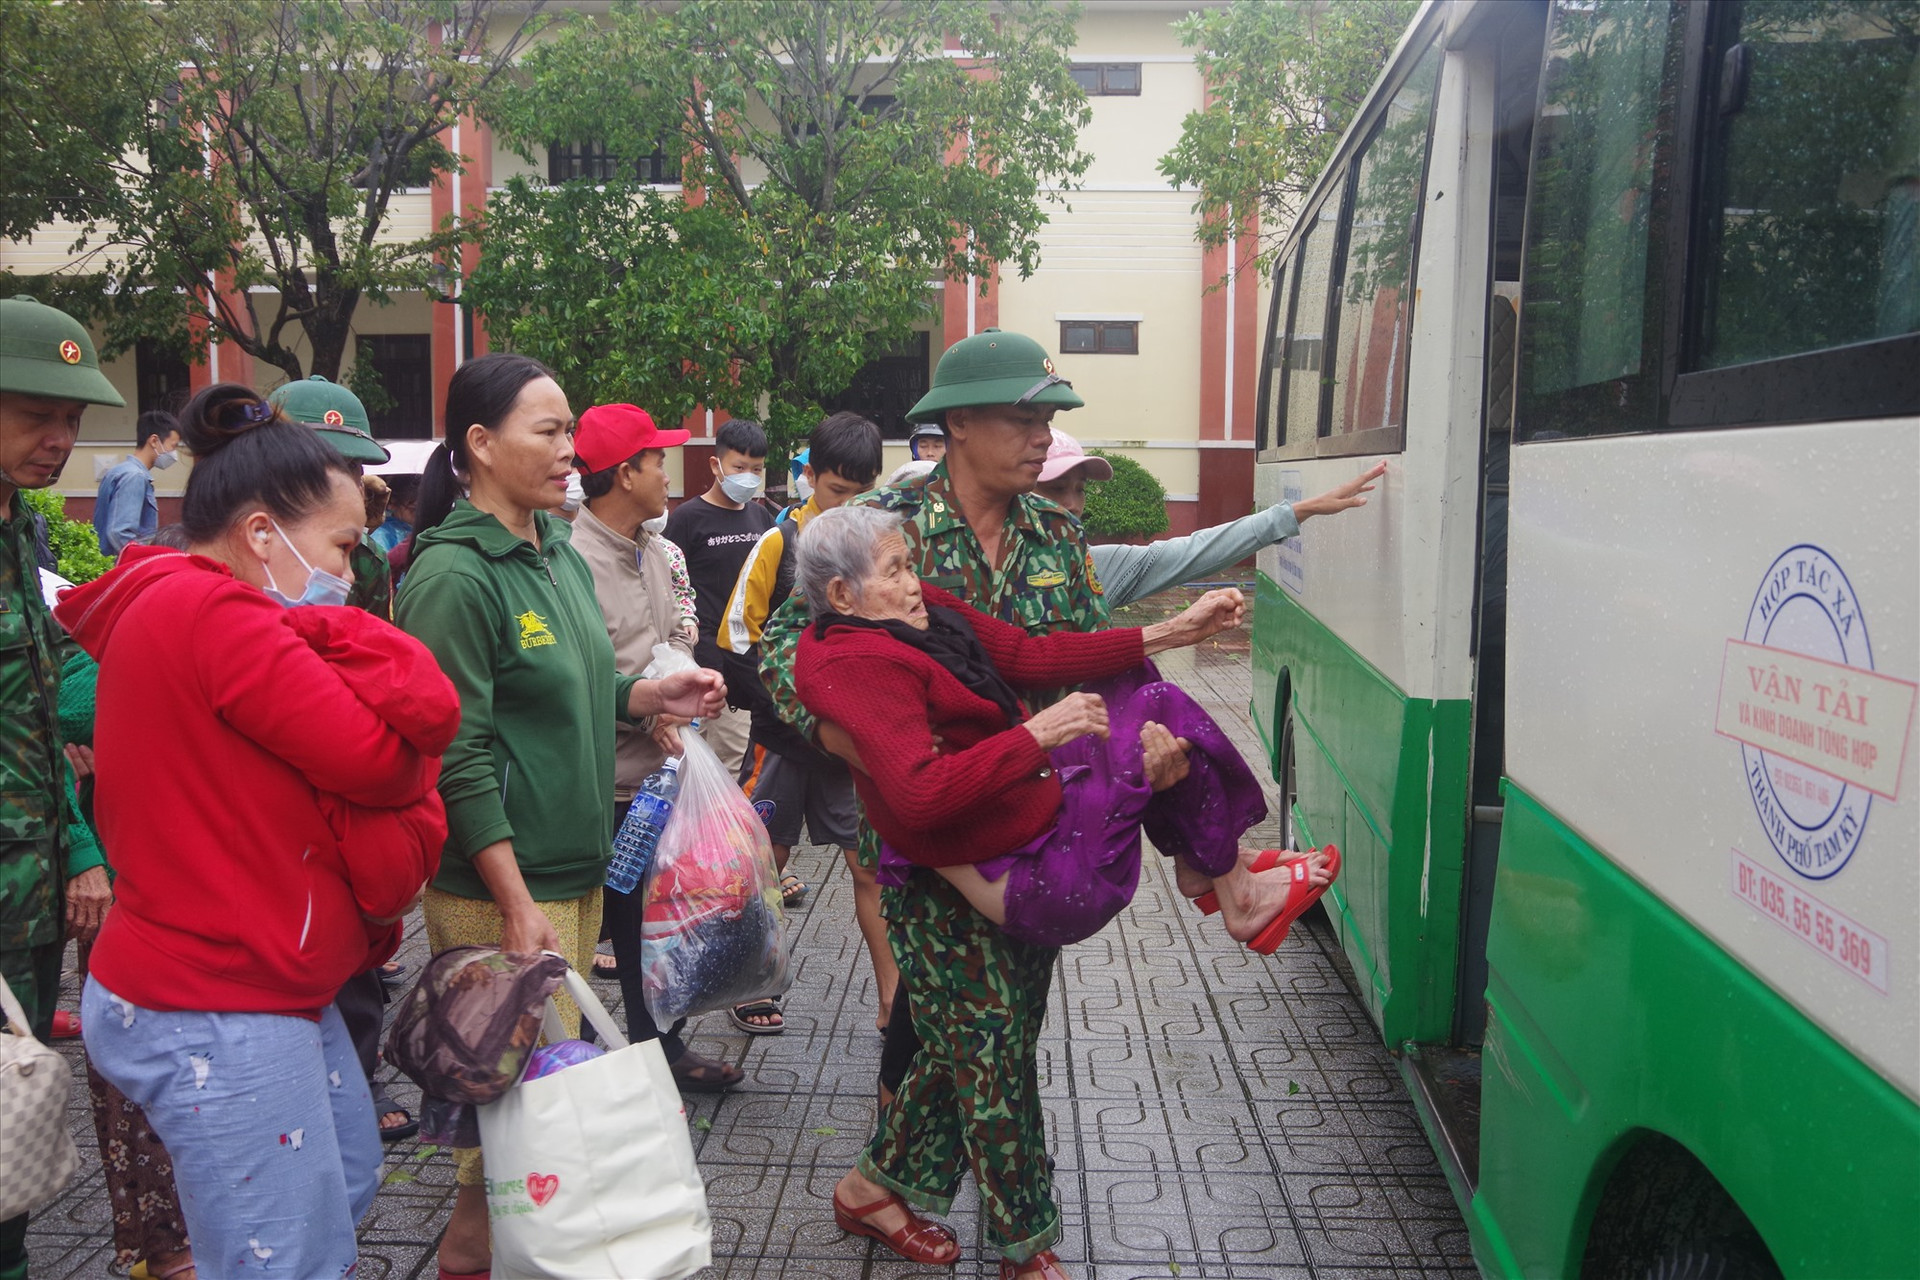 Cán bộ, chiến sĩ  Biên phòng Quảng Nam hỗ trợ người già yếu lên xe trở về với gia đình. Ảnh: HUỲNH CHÍN